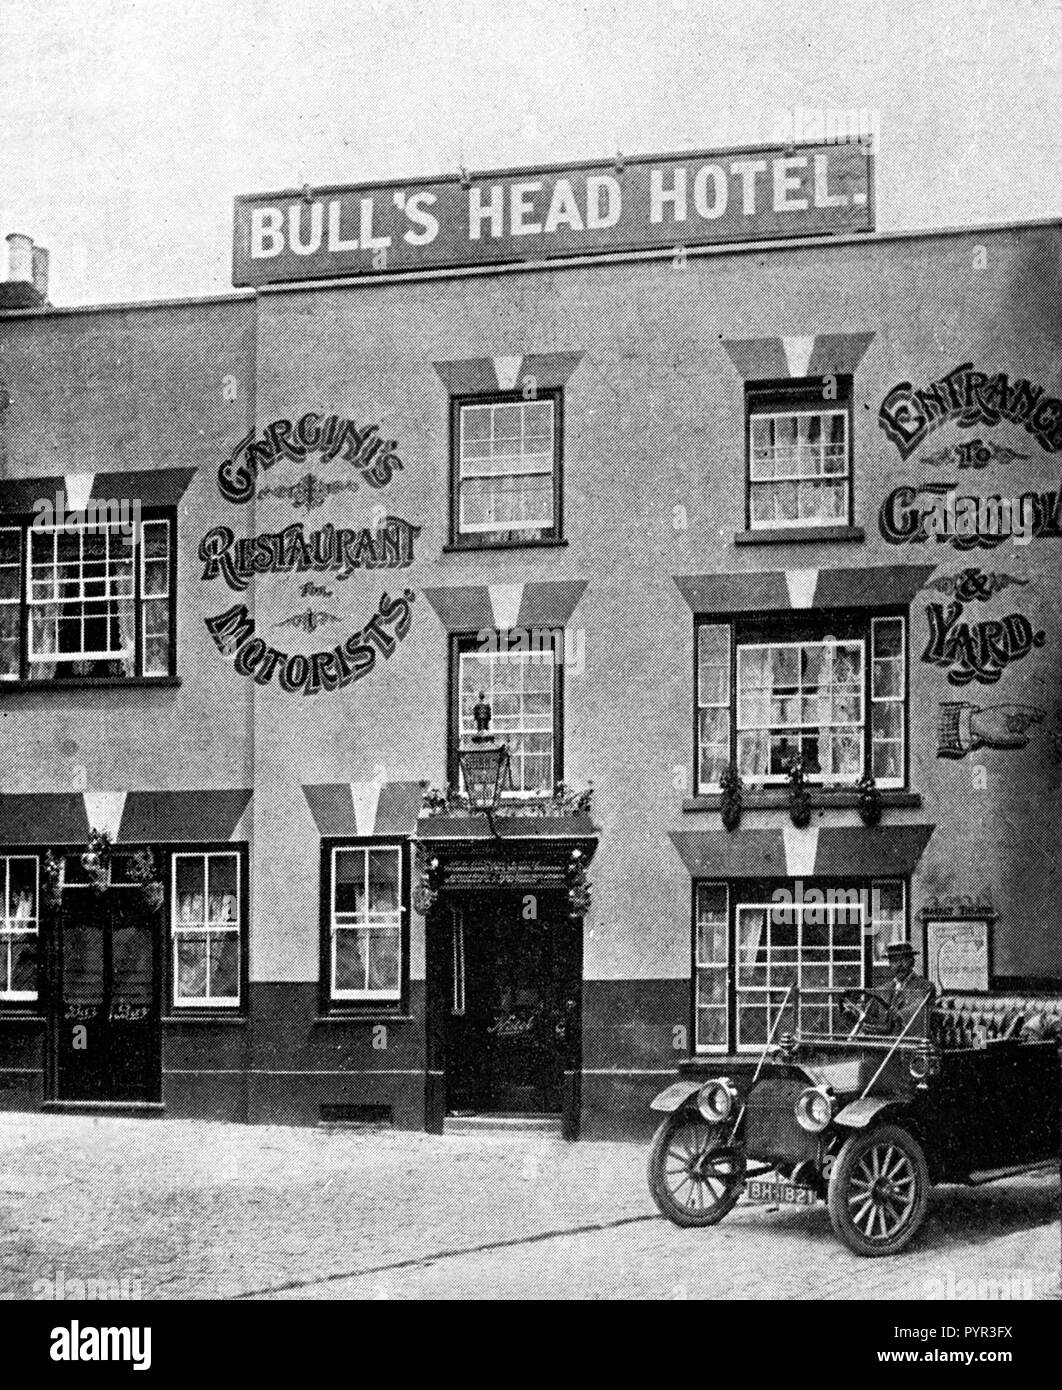 Bulls Head Hotel, Aylesbury début des années 1900 Banque D'Images